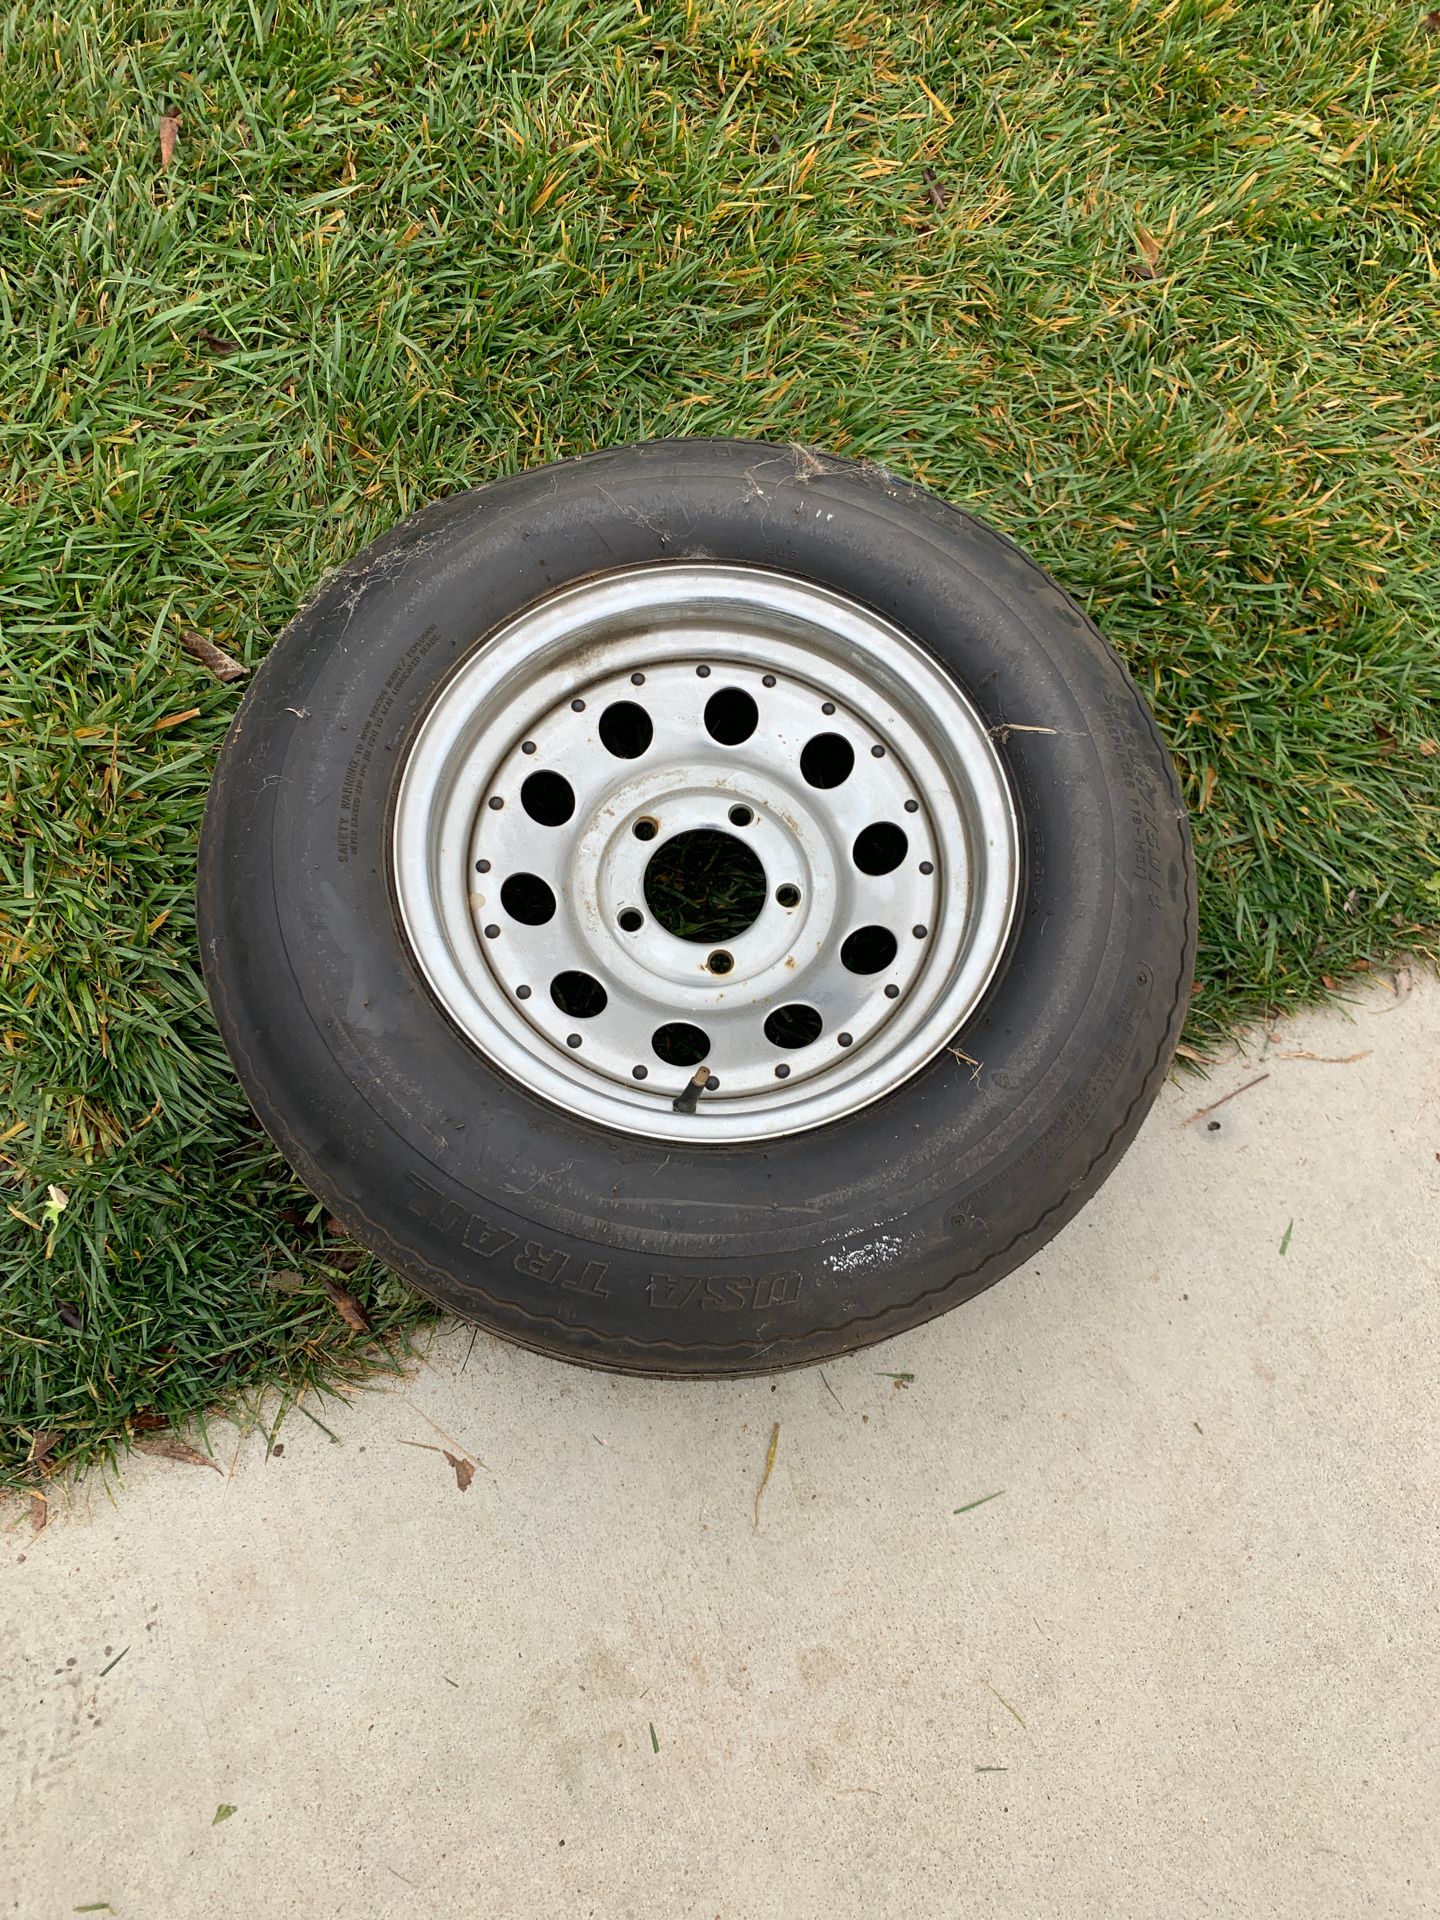 Trailer tire with no cracks